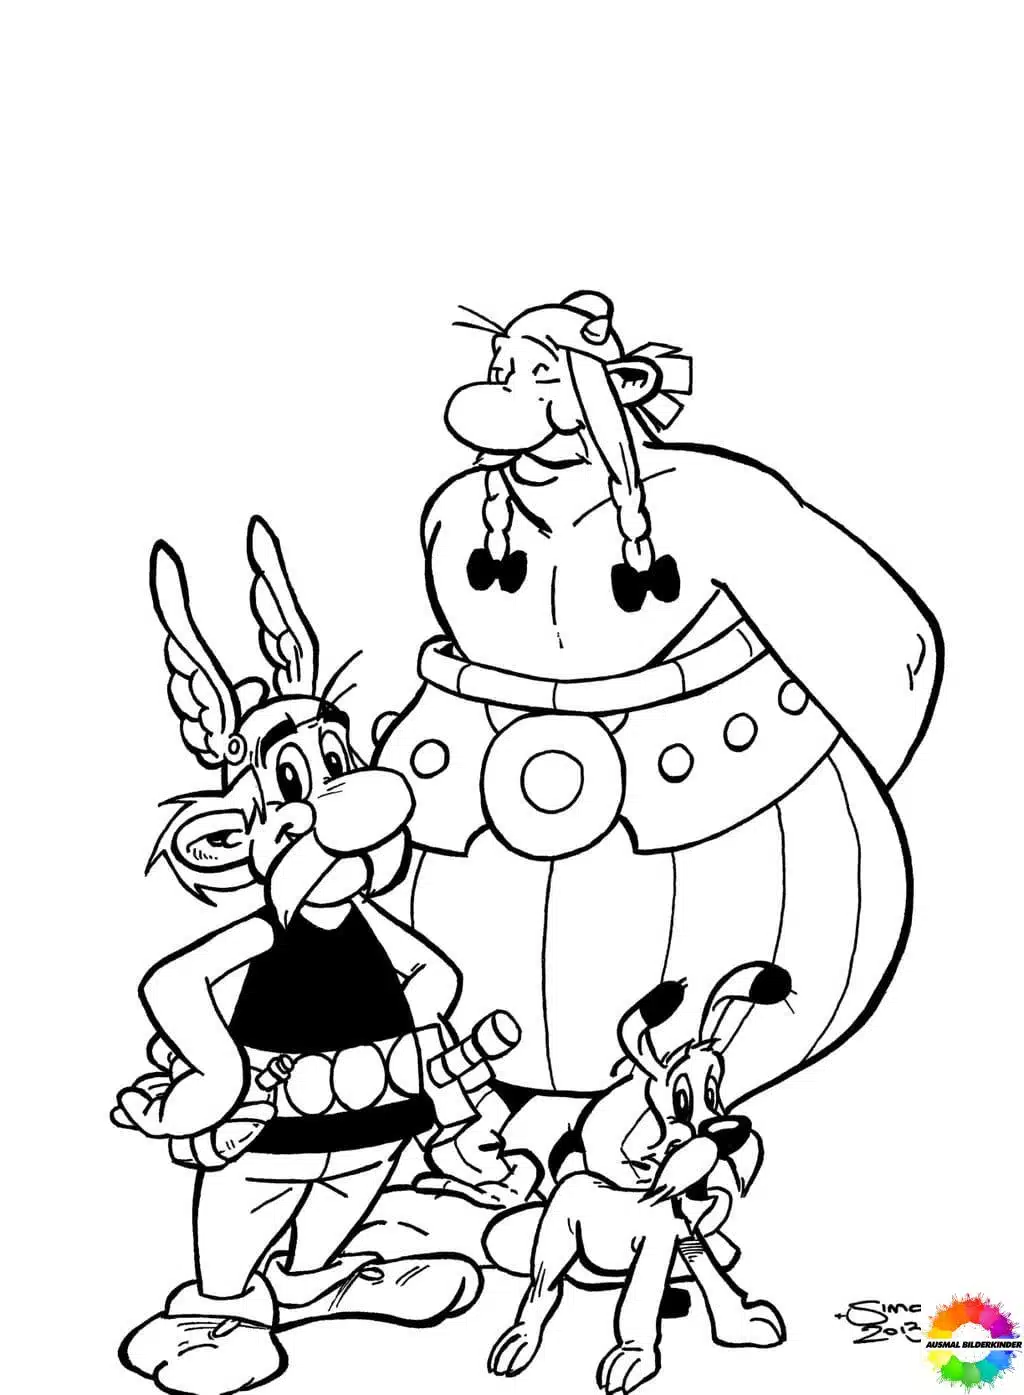 Asterix and Obelix 34